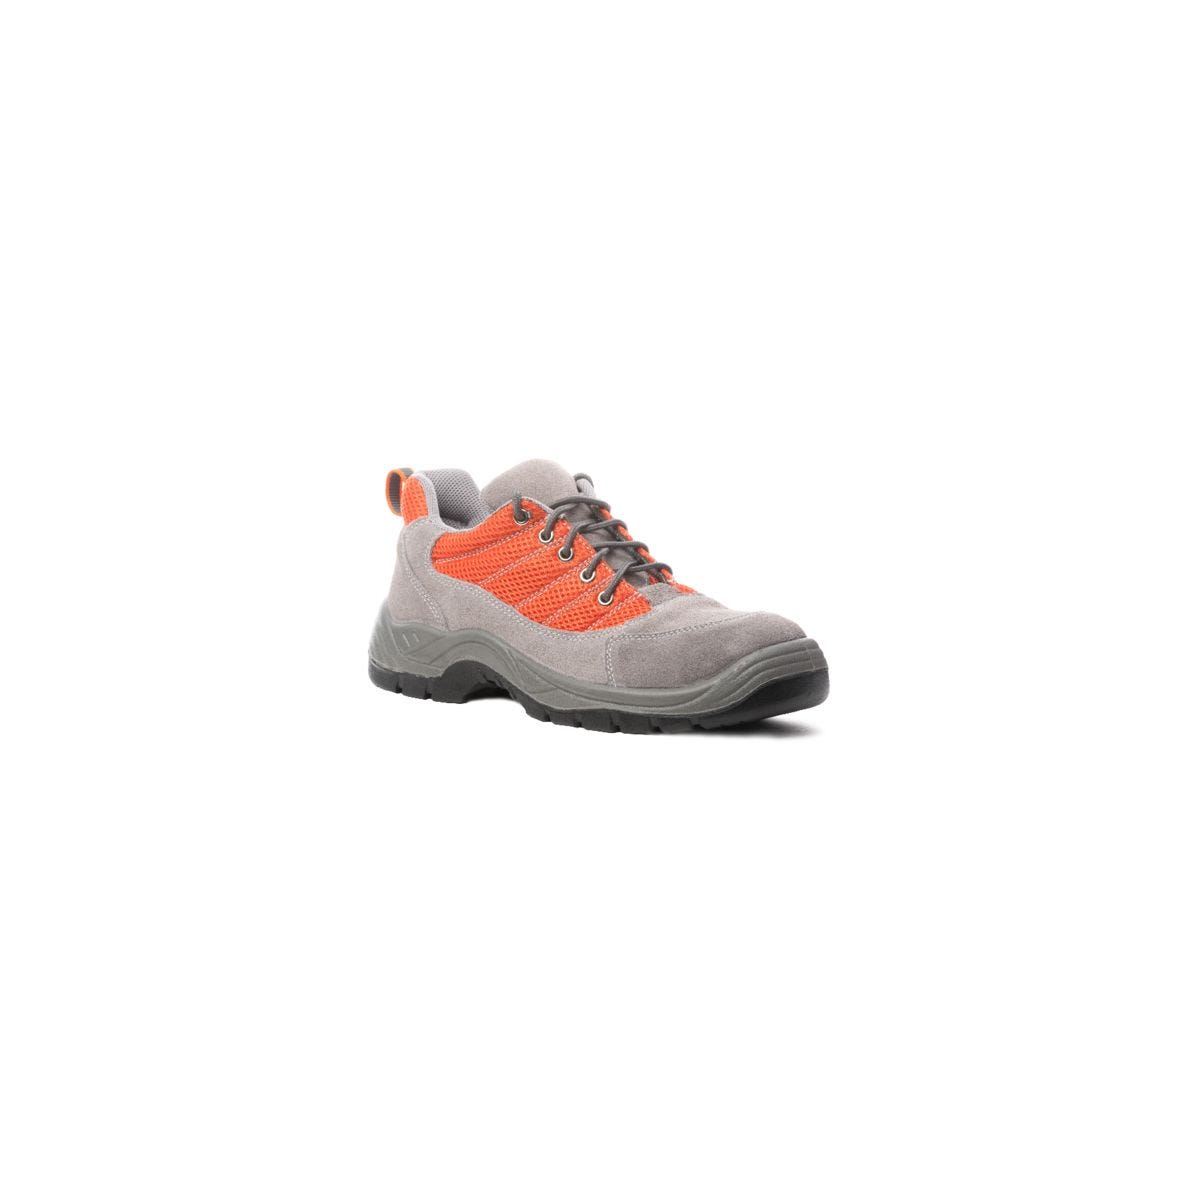 Chaussures de sécurité SPINELLE S1P basse orange - COVERGUARD - Taille 43 0